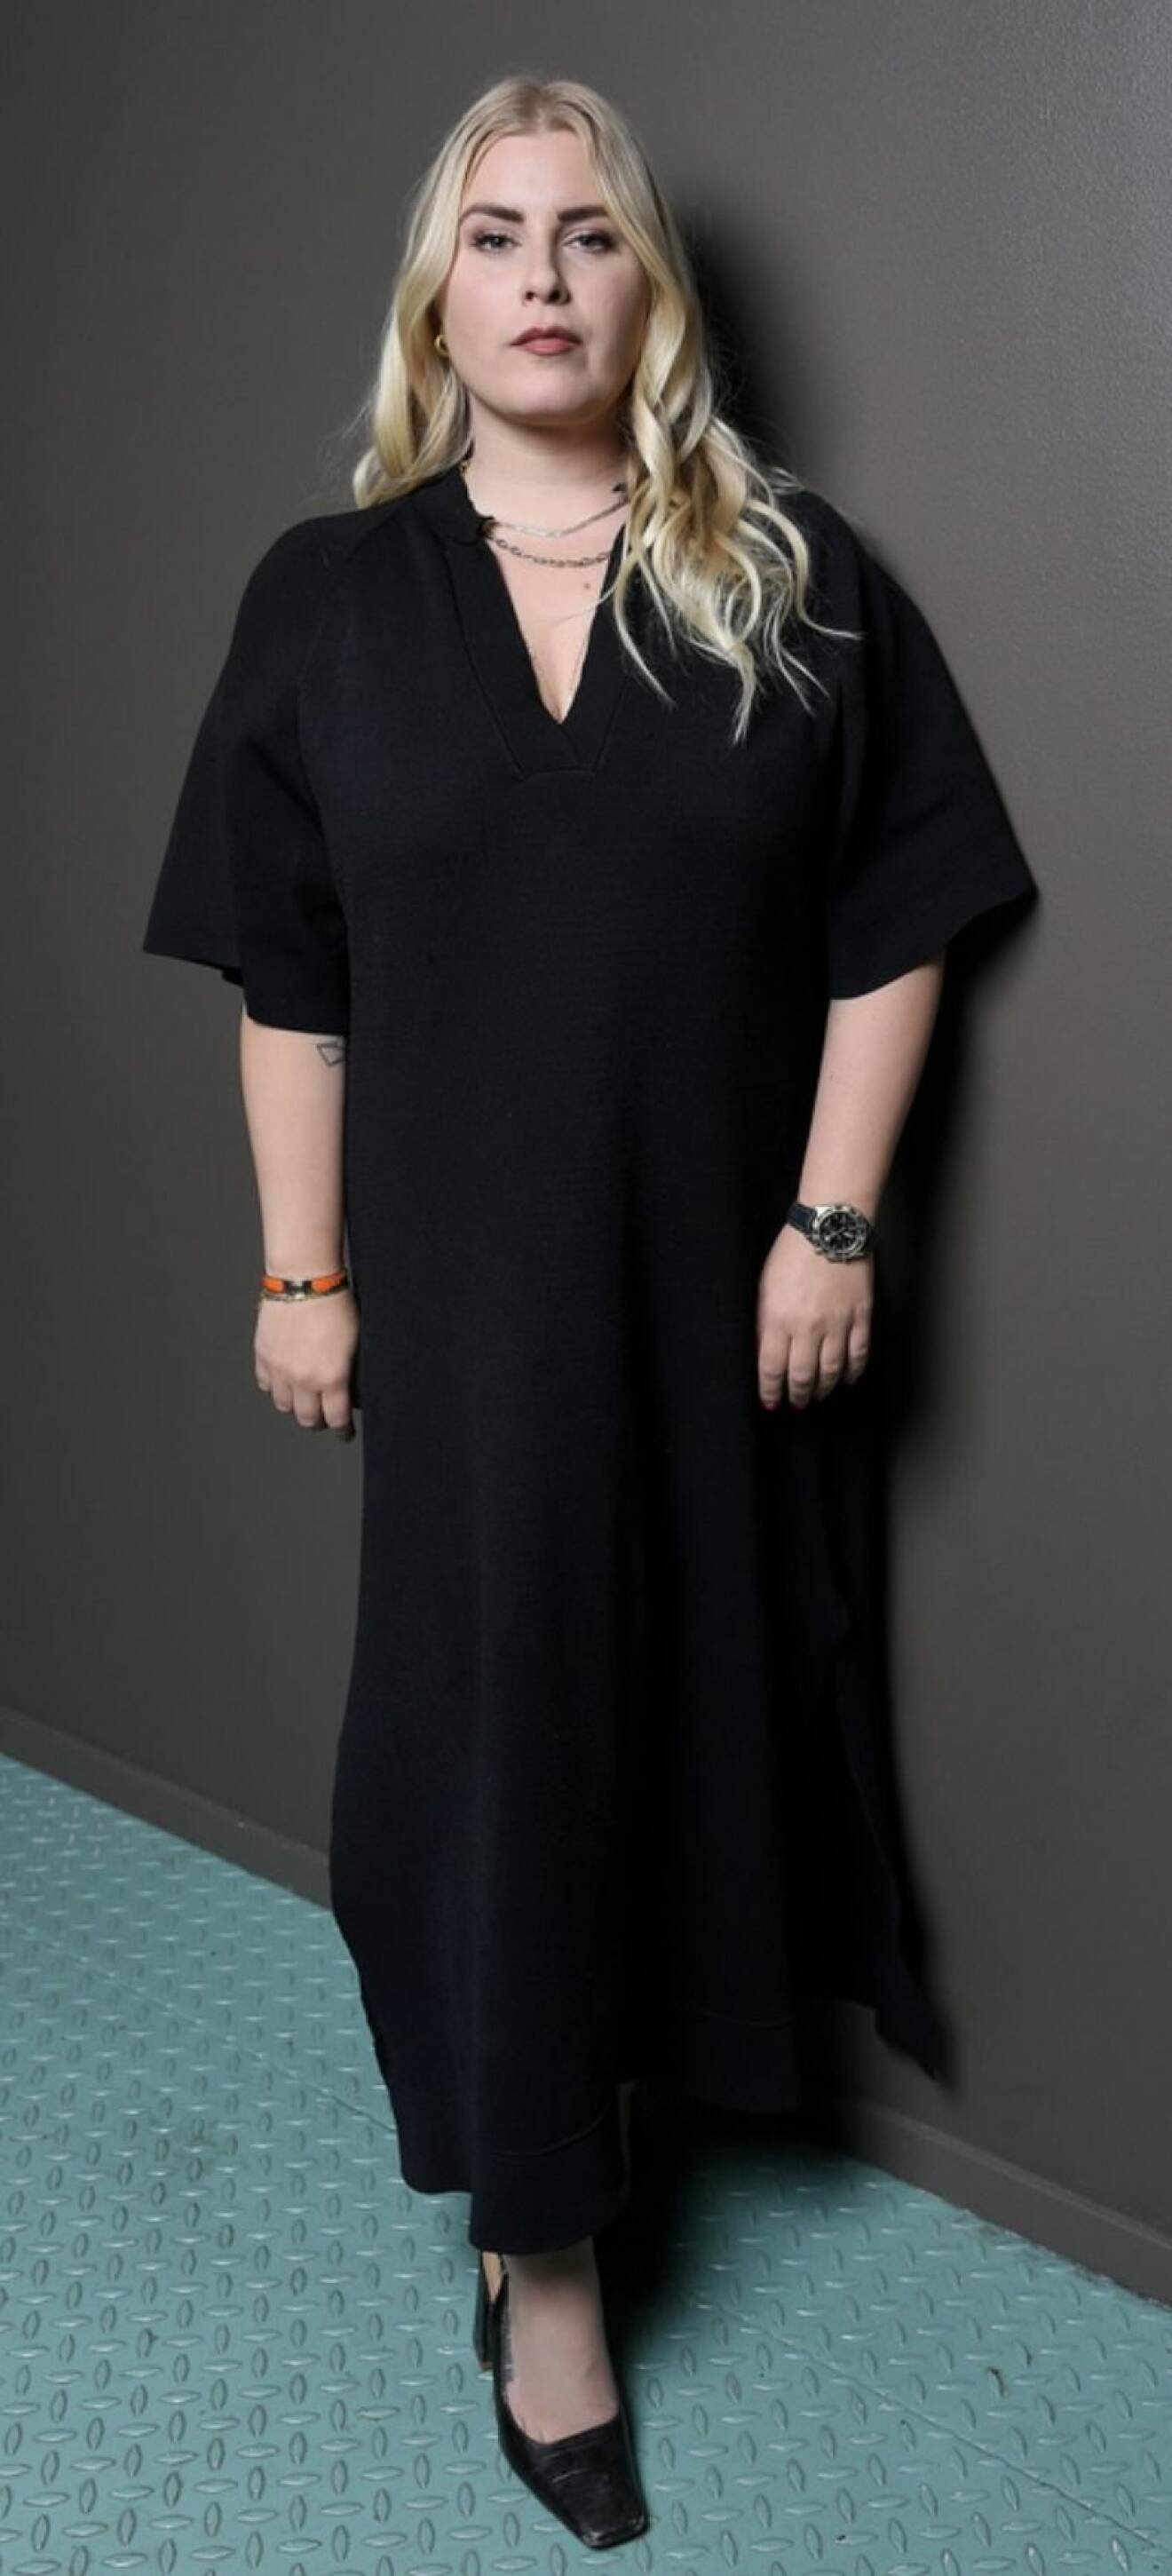 Michaela Hamilton i svart klänning